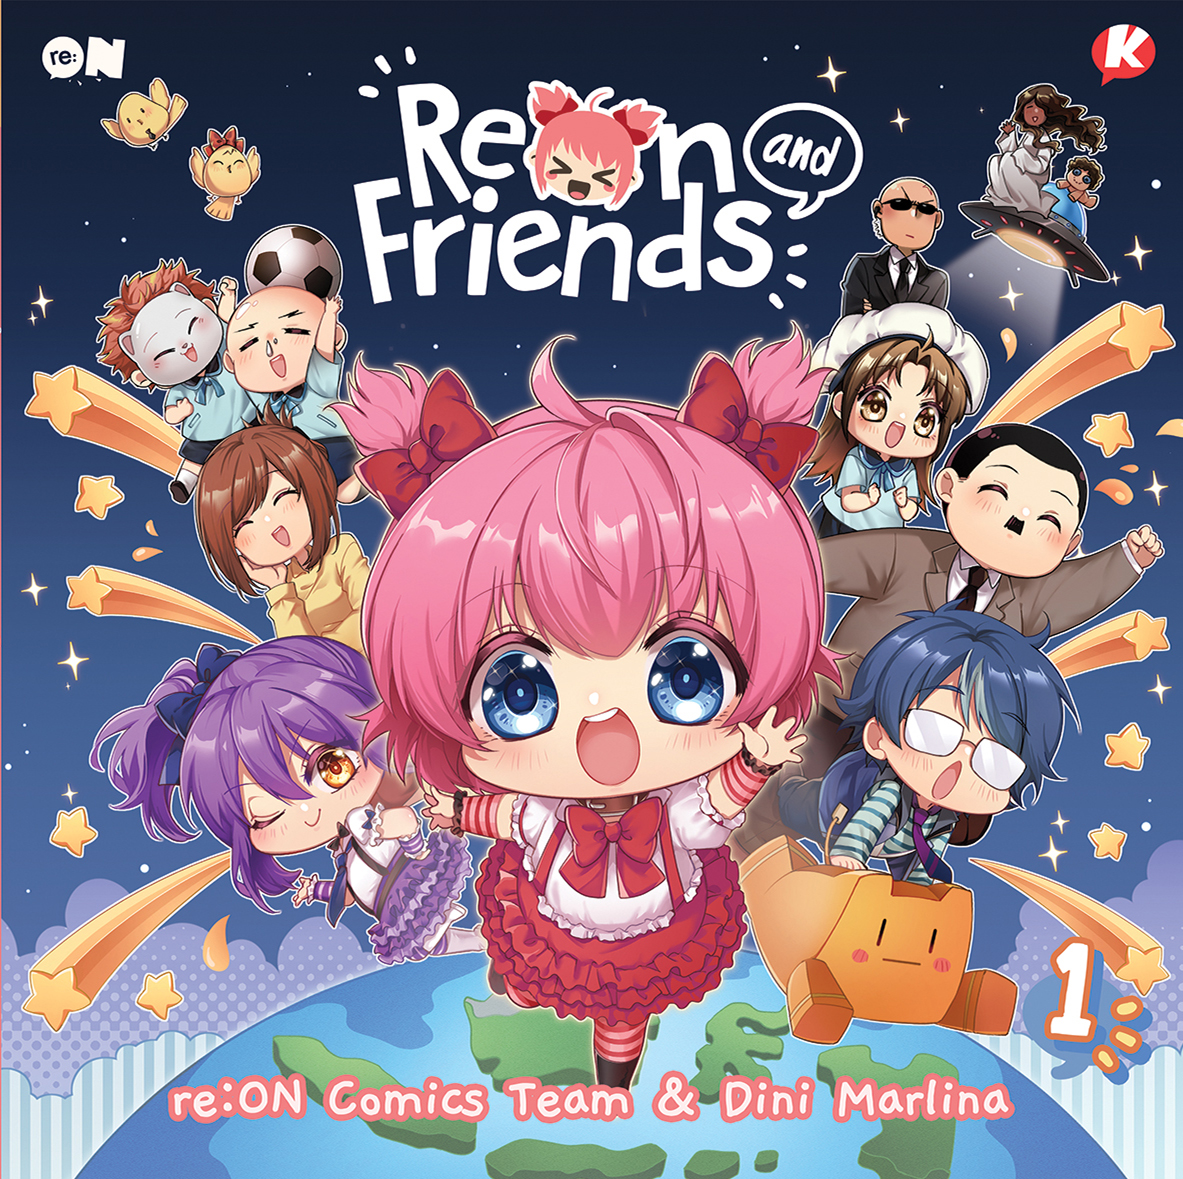 Gambar cover buku Koloni: ReON and Friends Volume 1 dari penulis Reon Comics Team